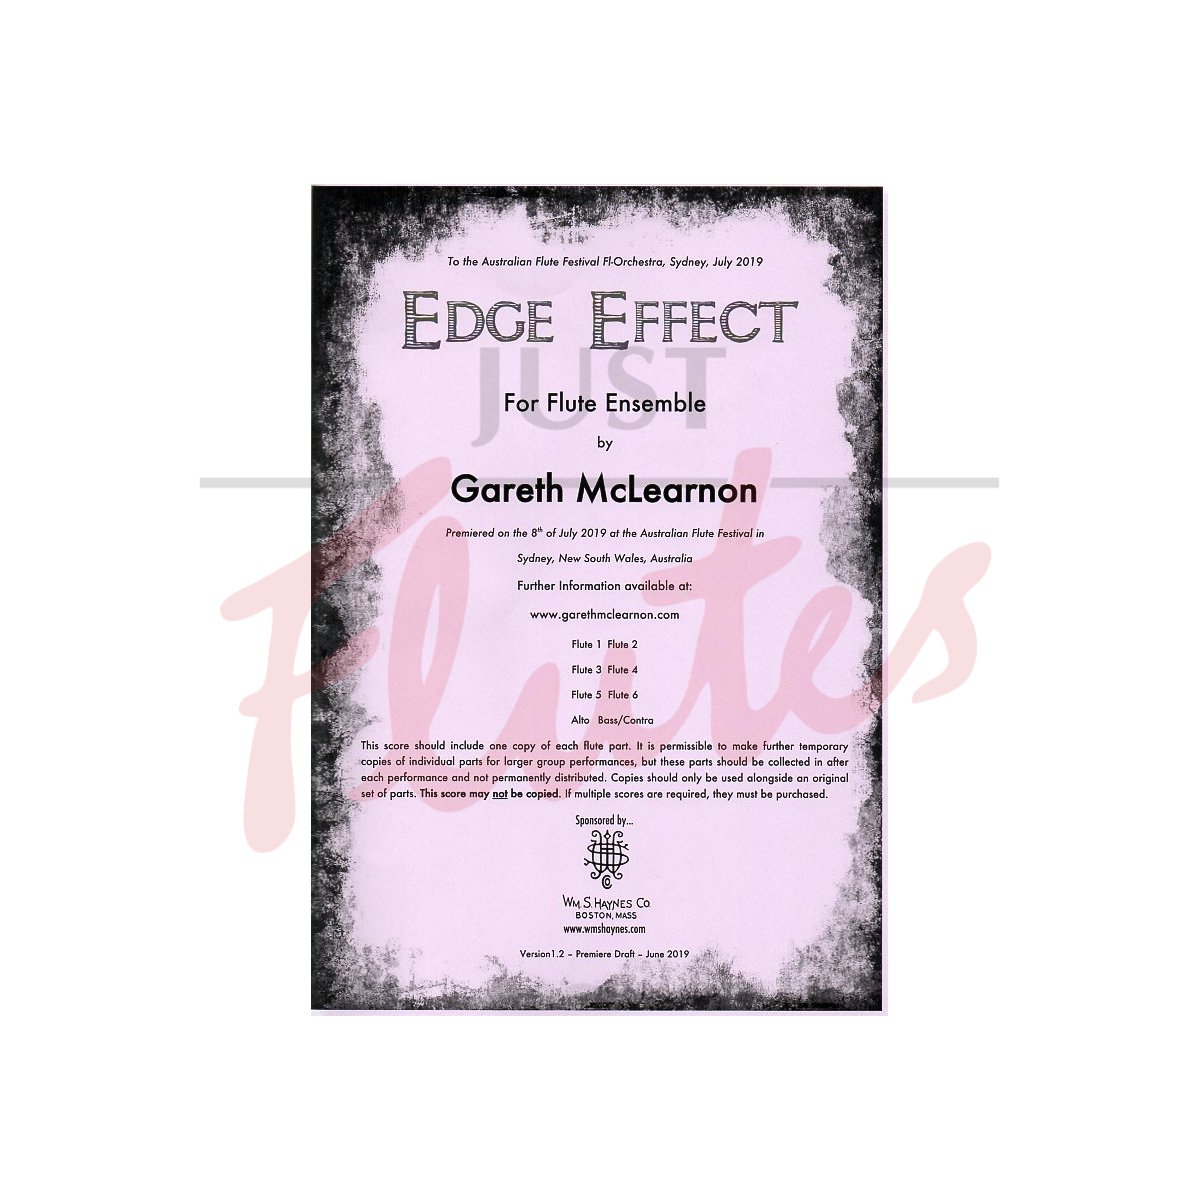 Edge Effect for Flute Ensemble